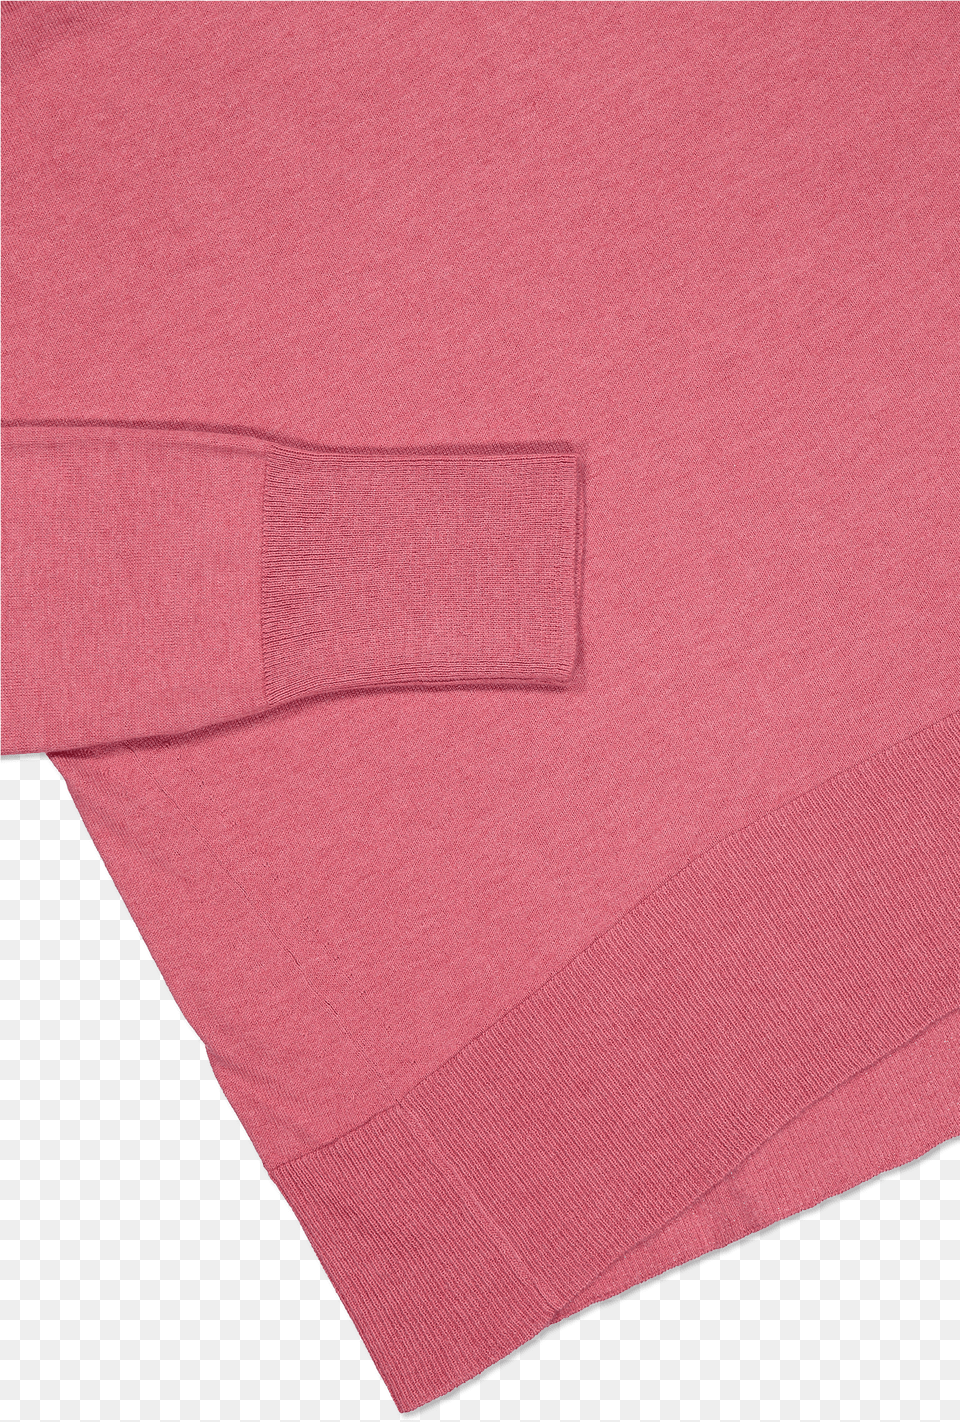 Raglan Standneck Sweater Rosebud Heather Download Pocket Png Image